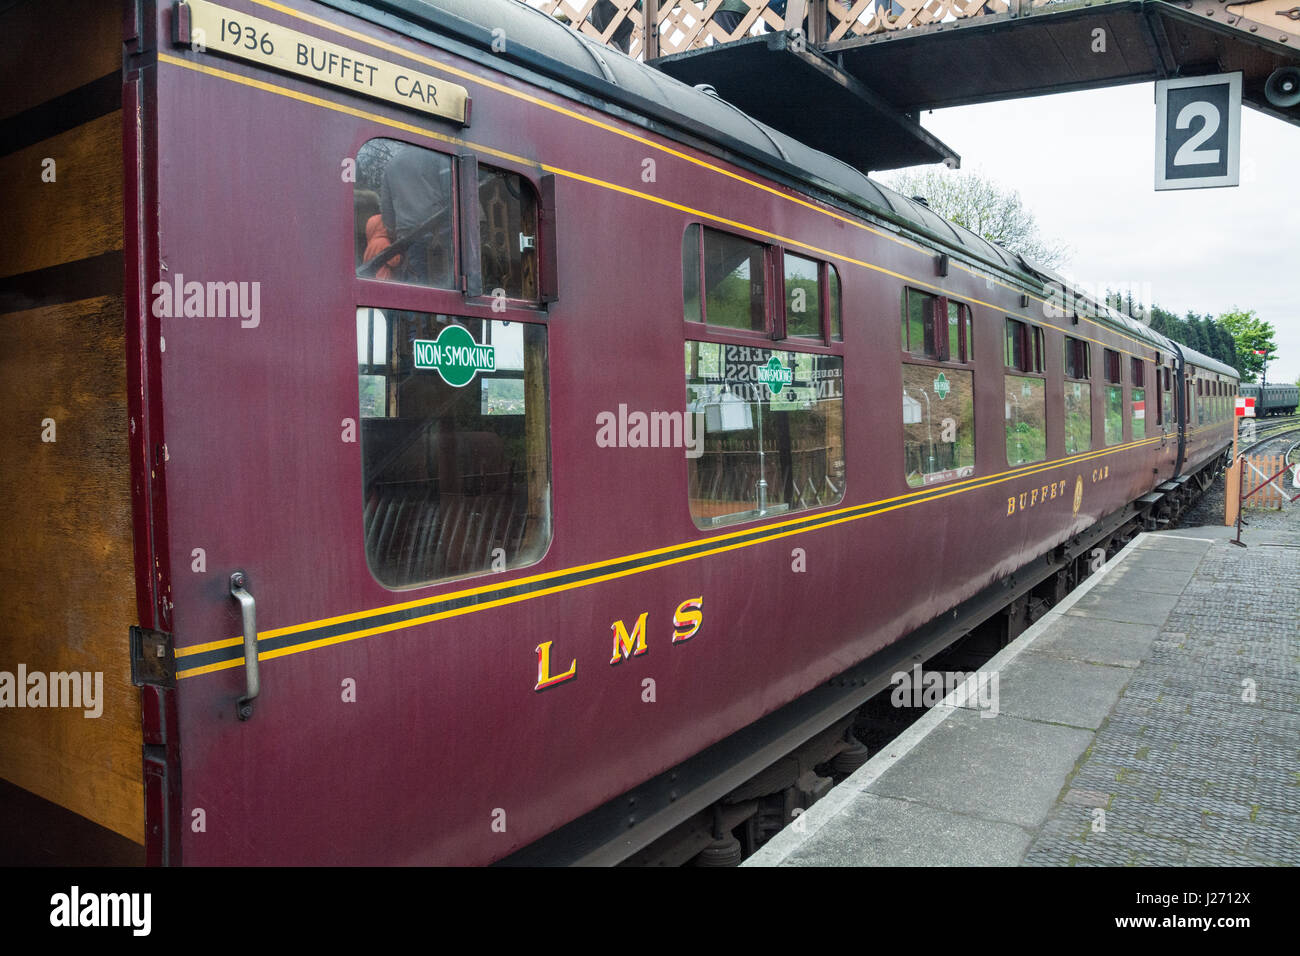 Voitures sur le Royal Scot train à vapeur, la gare de Bridgnorth, Shropshire, West Midlands, Royaume-Uni. Banque D'Images